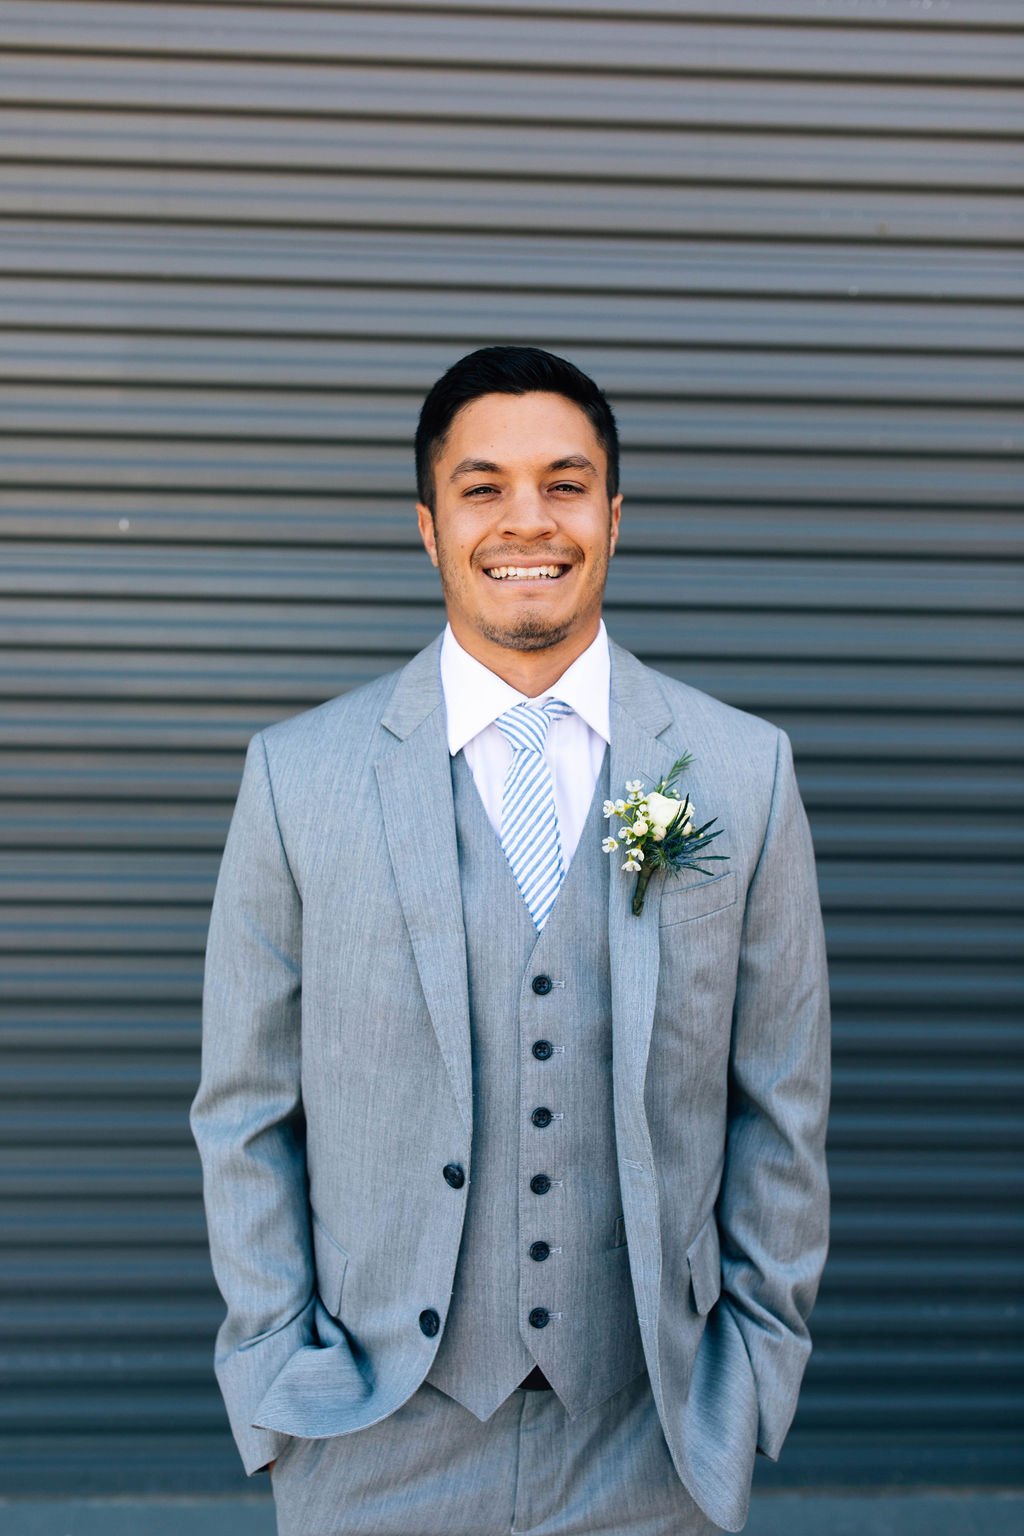 ocoee crest summer wedding groom's suit grey suit seersucker tie.jpg